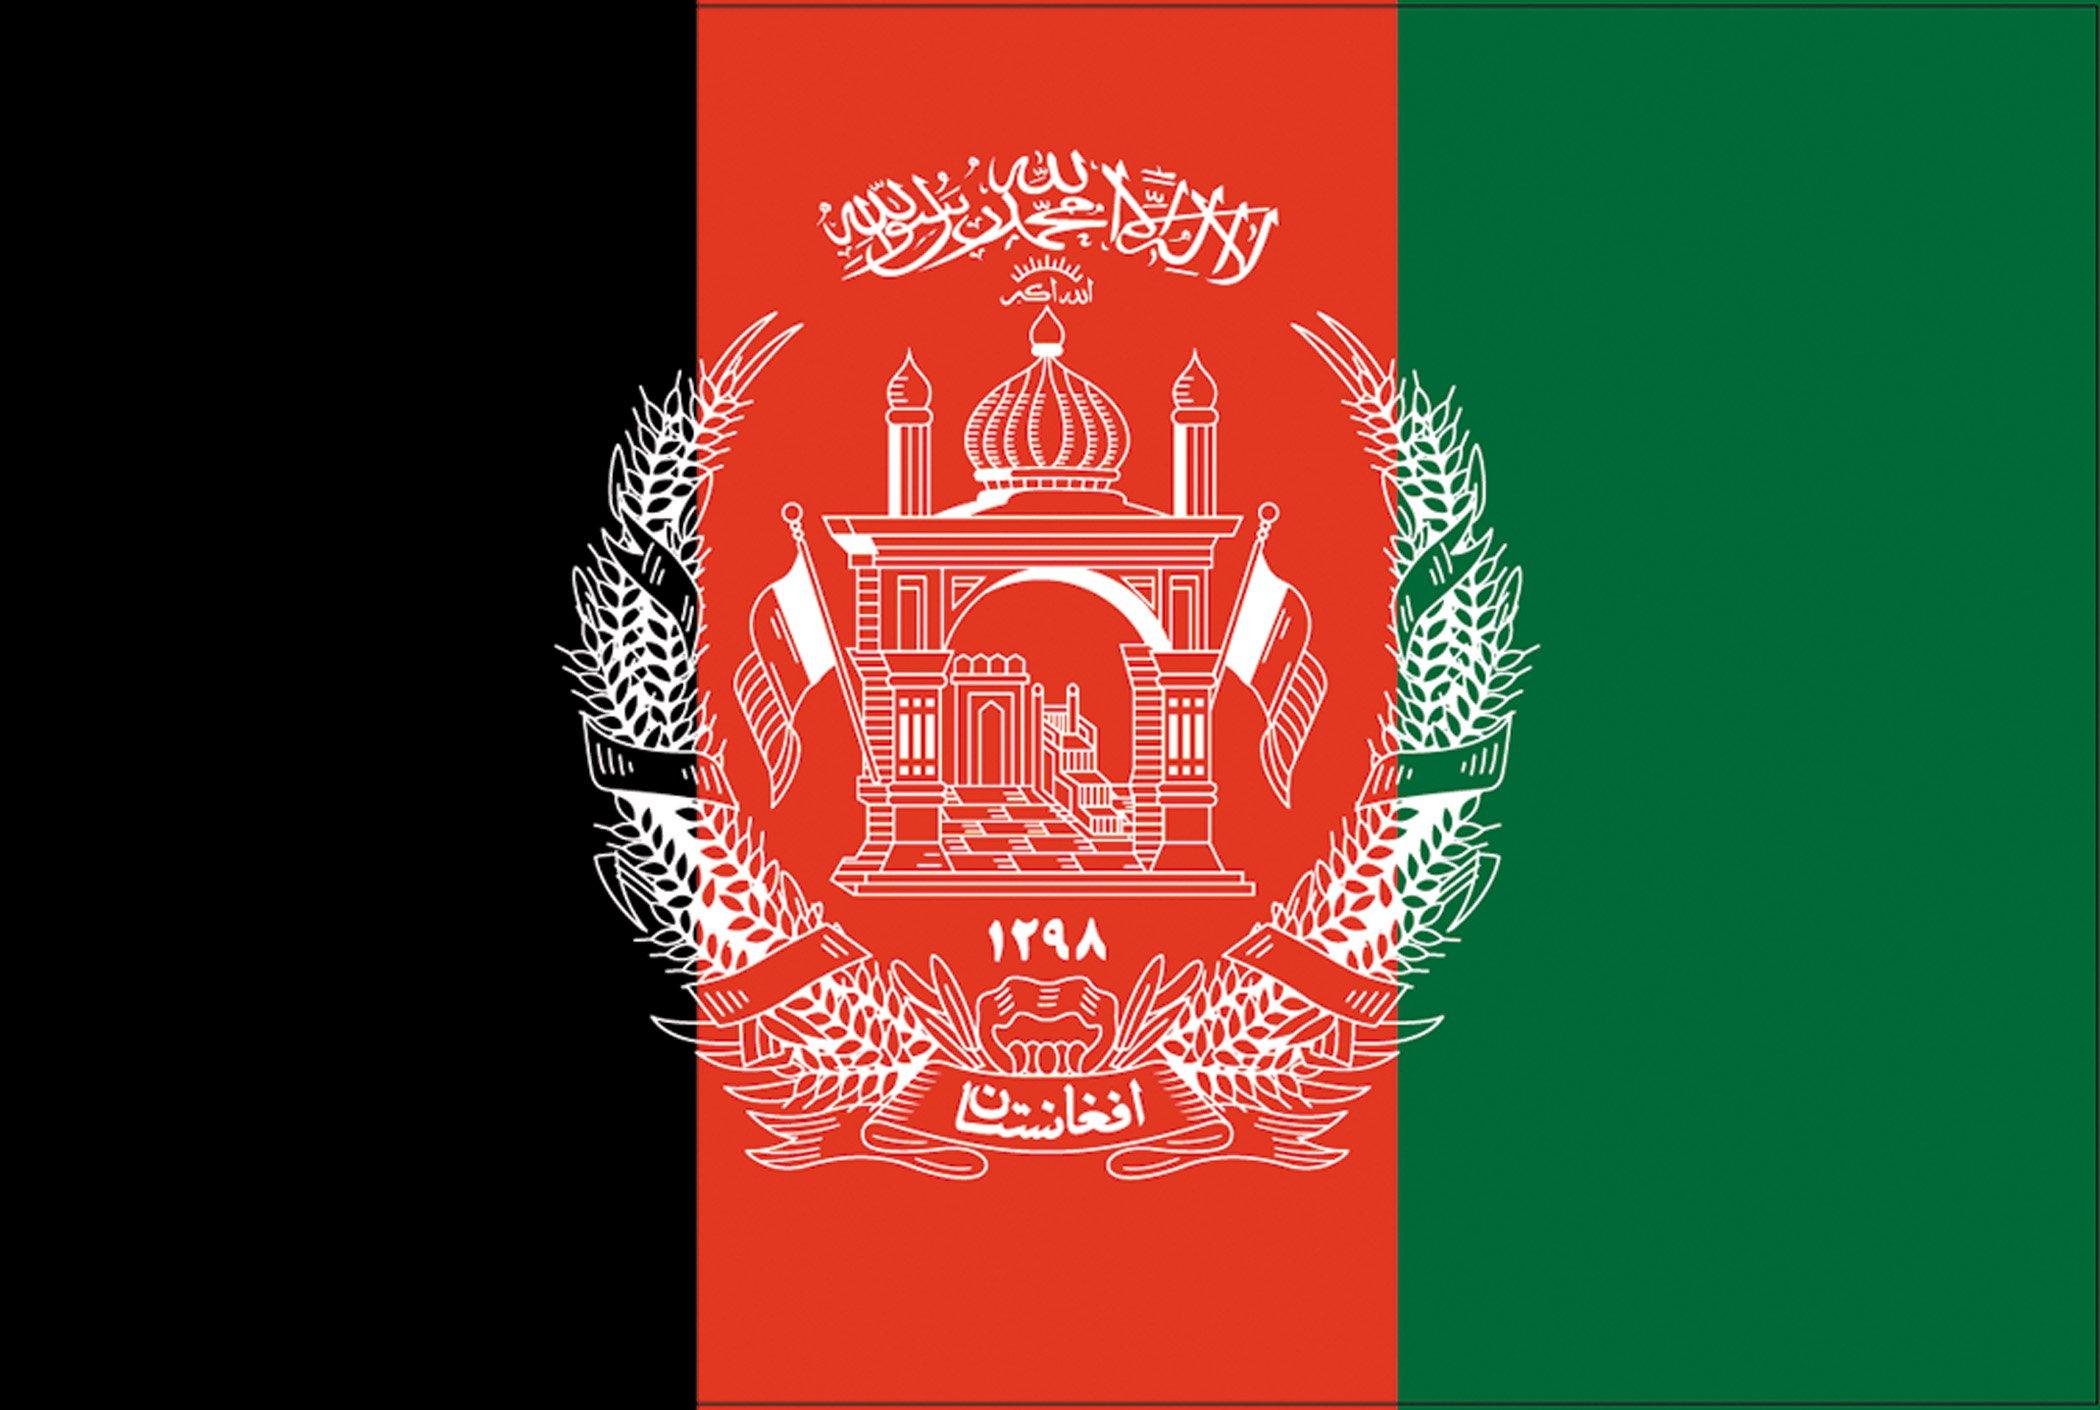 The Afghanistan Flag